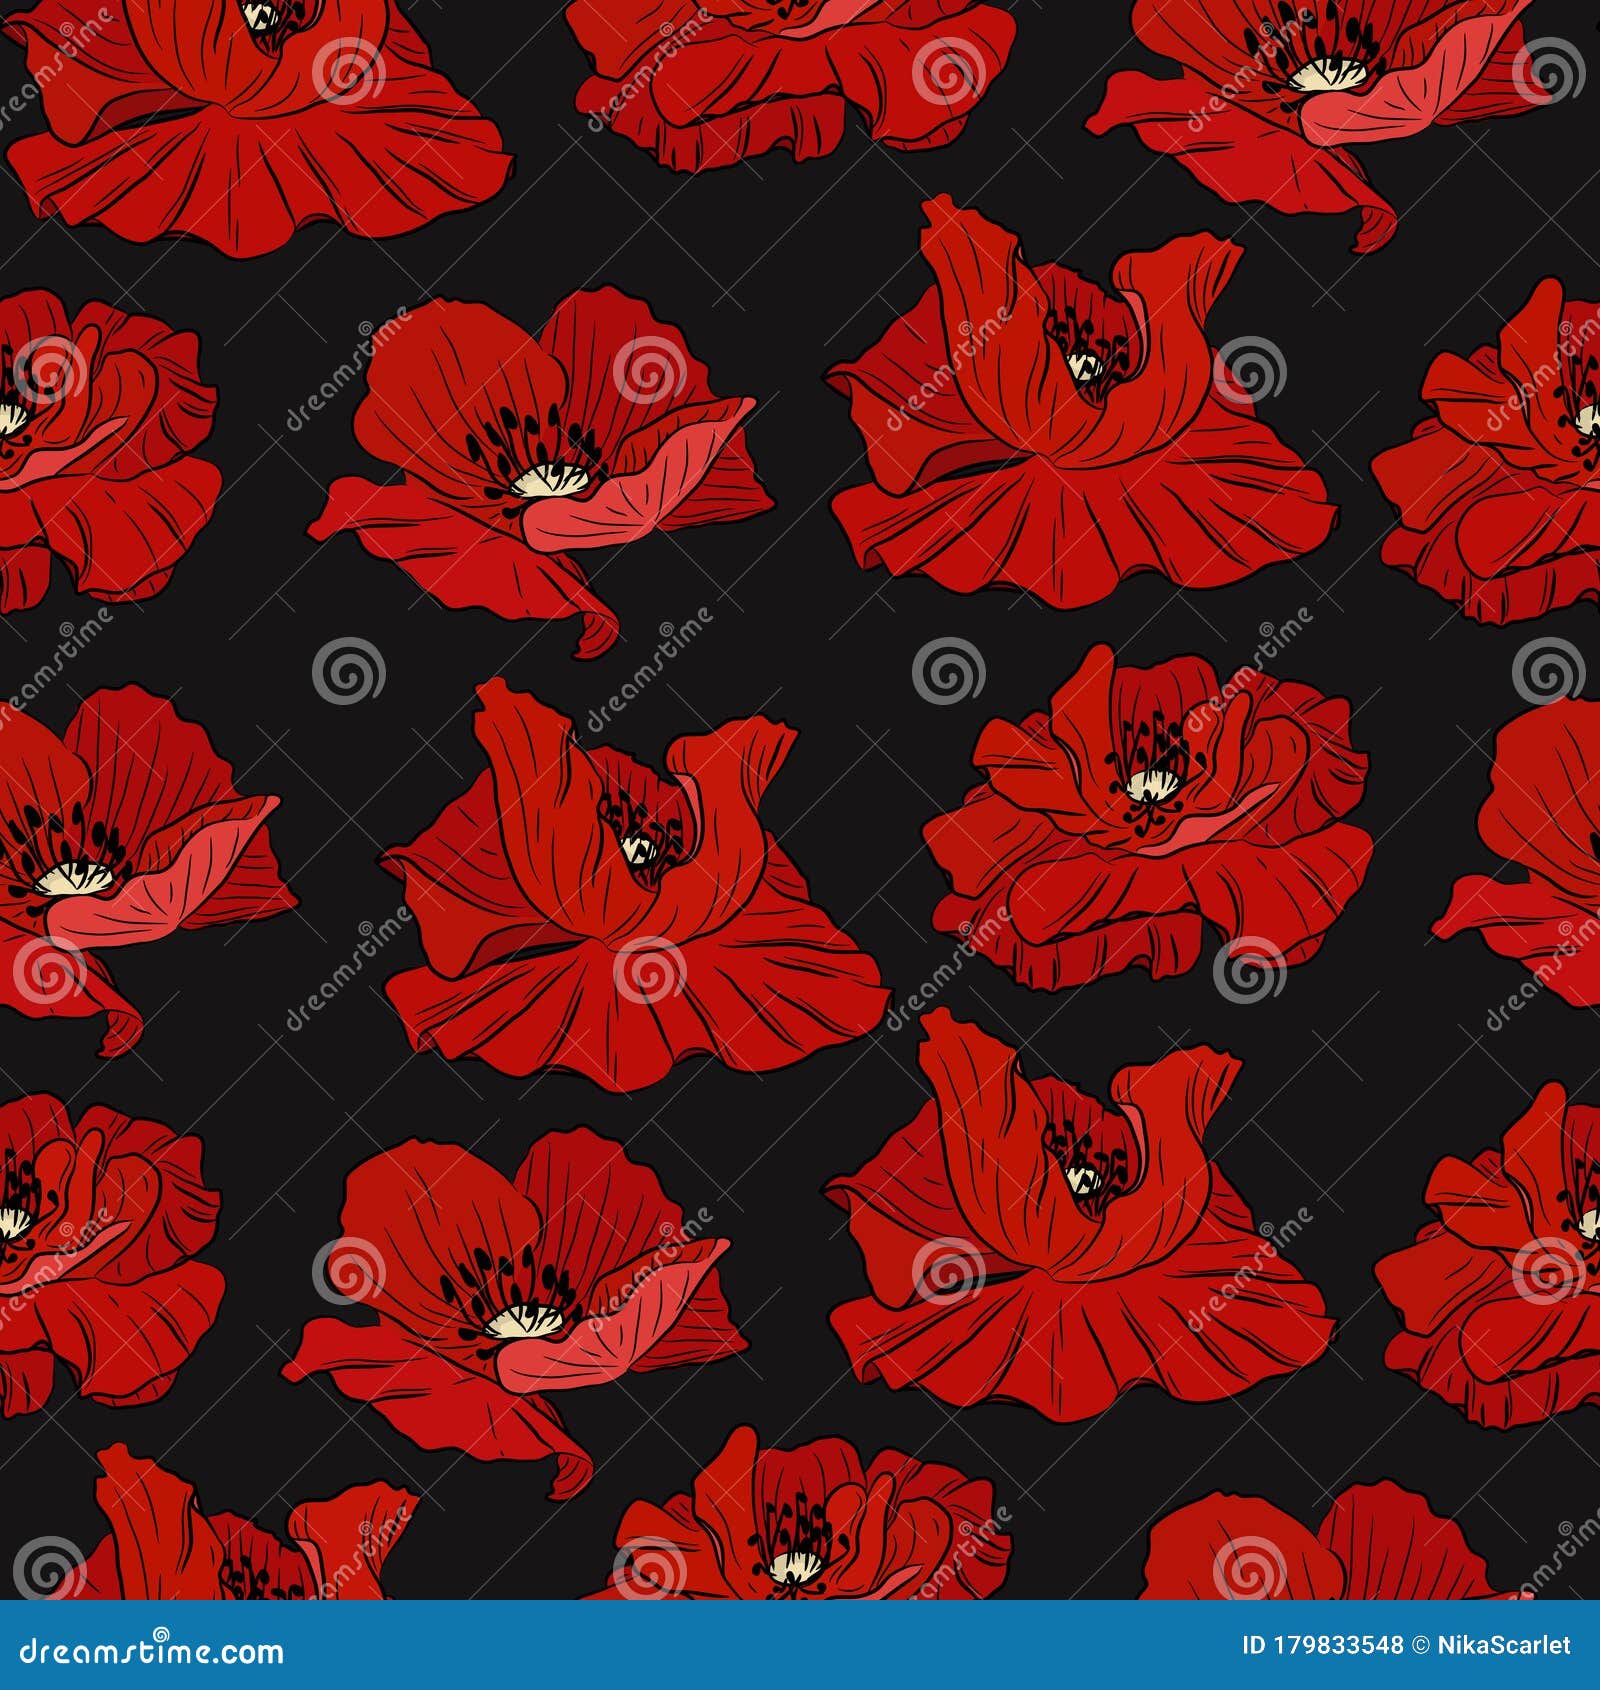 罂粟花黑纹向量例证 插画包括有花卉 分级显示 方式 背包 红色 打印 逗人喜爱 装饰